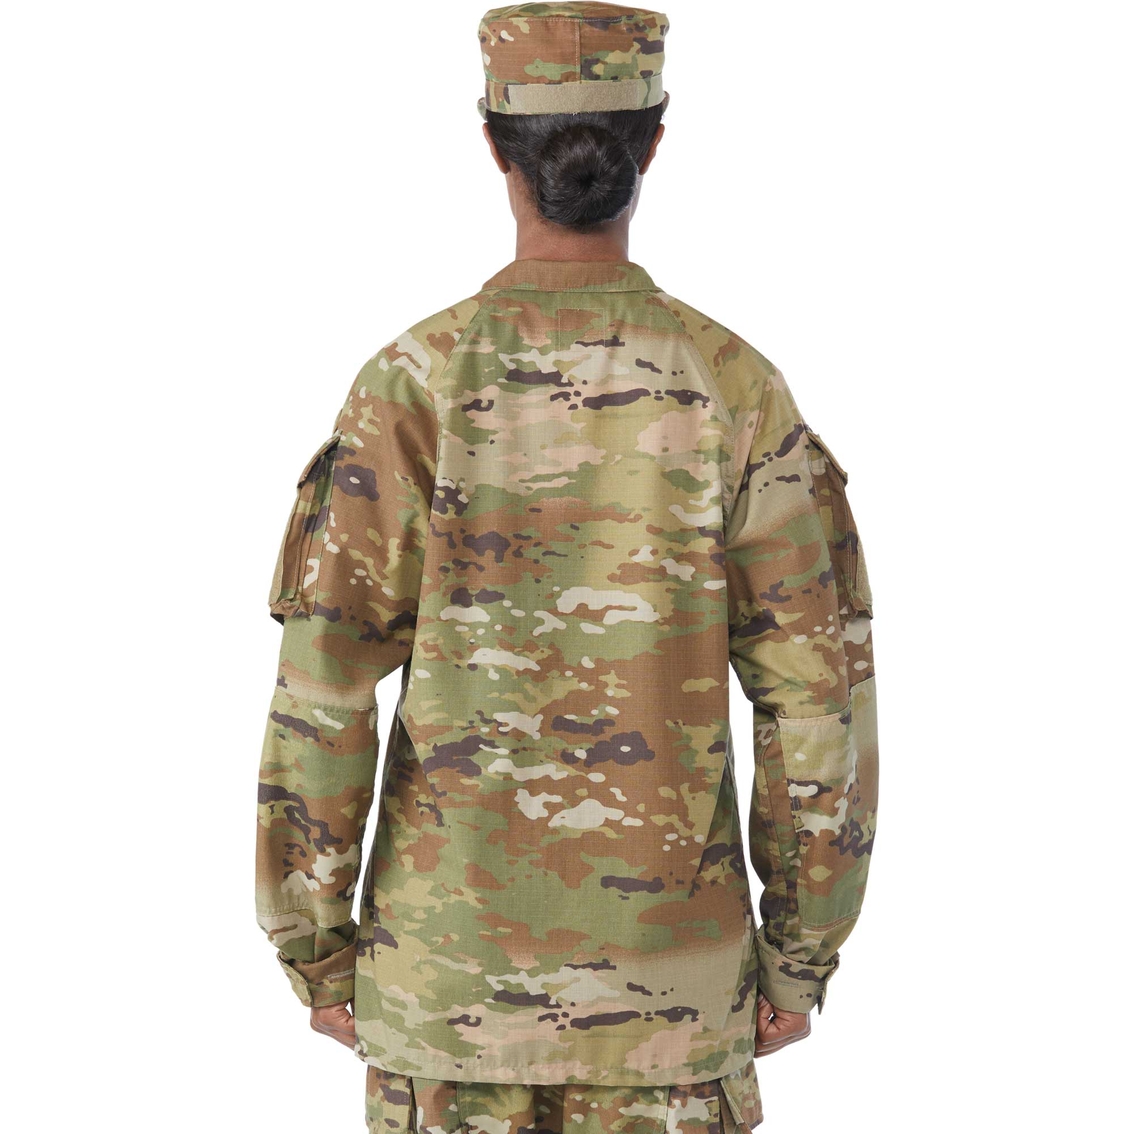 Army Improved Hot Weather Combat Uniform (IHWCU) Coat Female (OCP) - Image 2 of 4